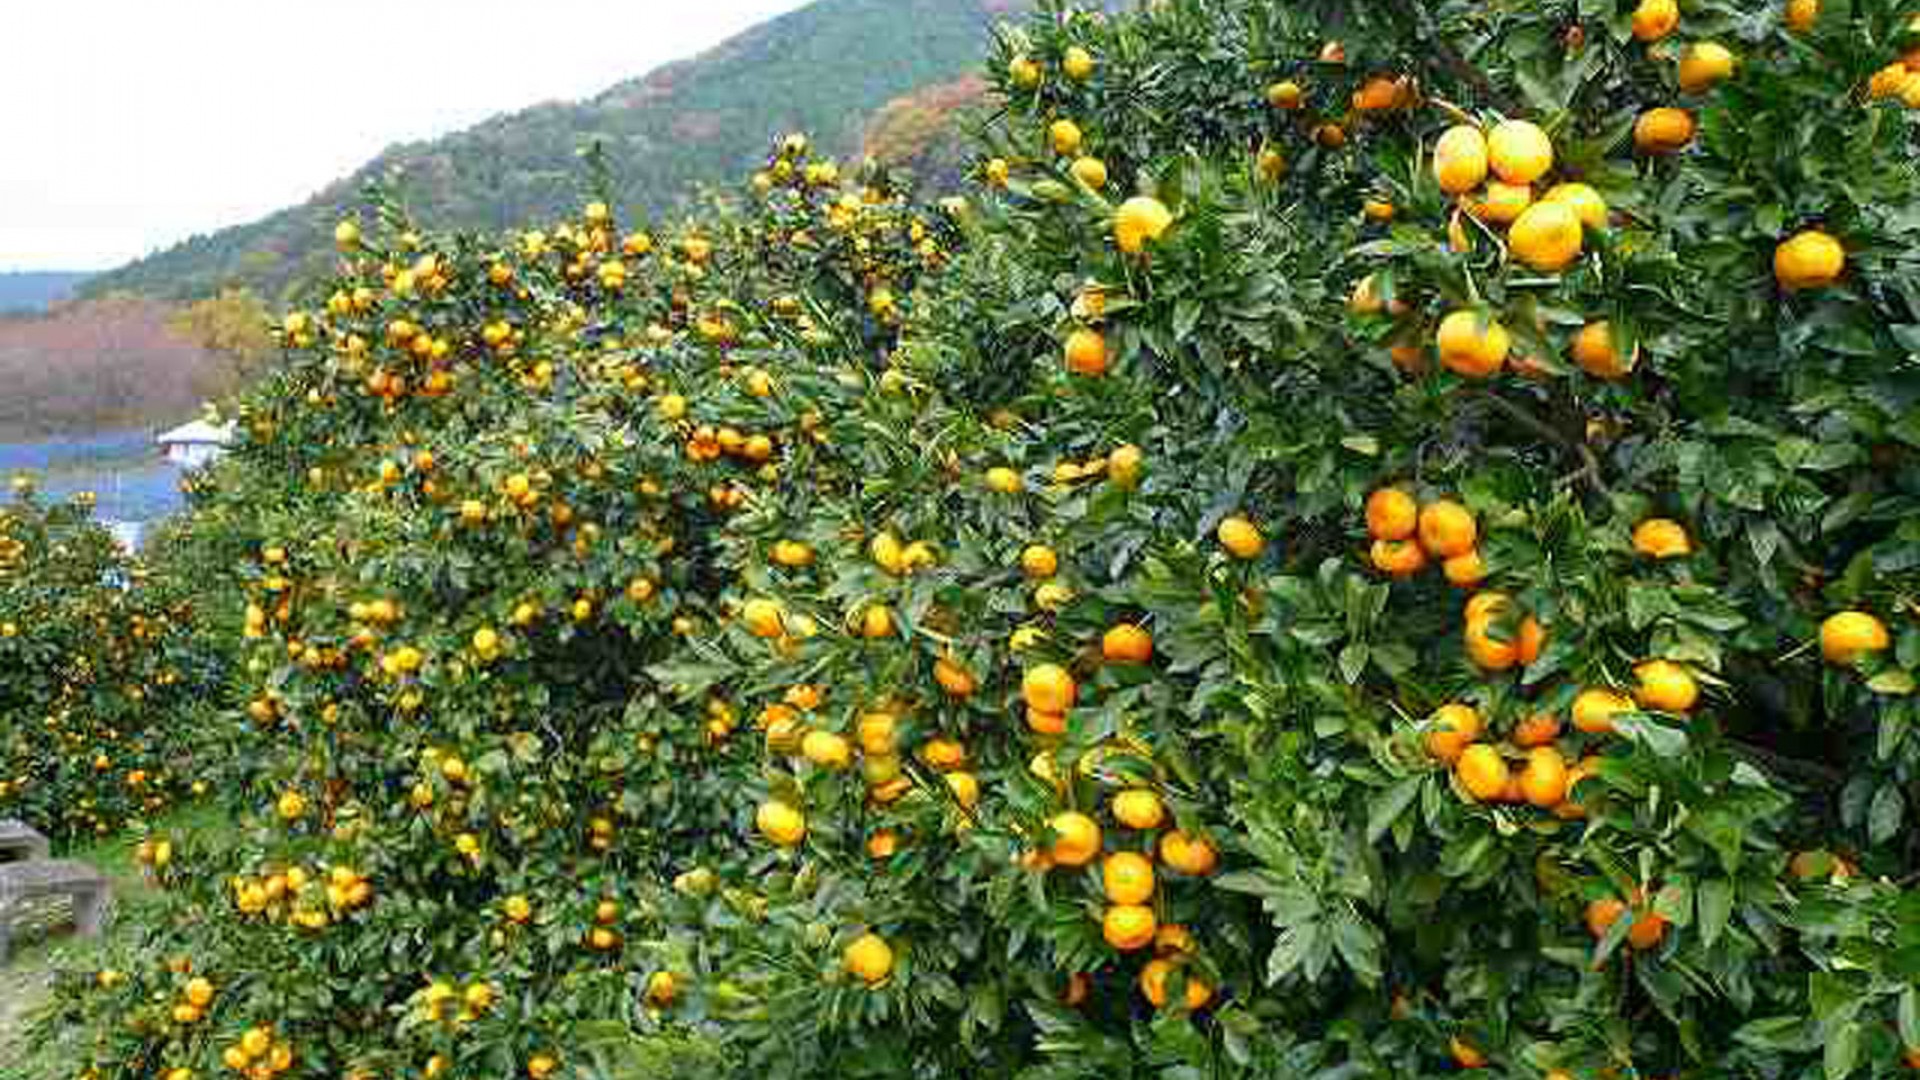 Hái quýt: Vườn ăn quả Naito & Công viên Agri